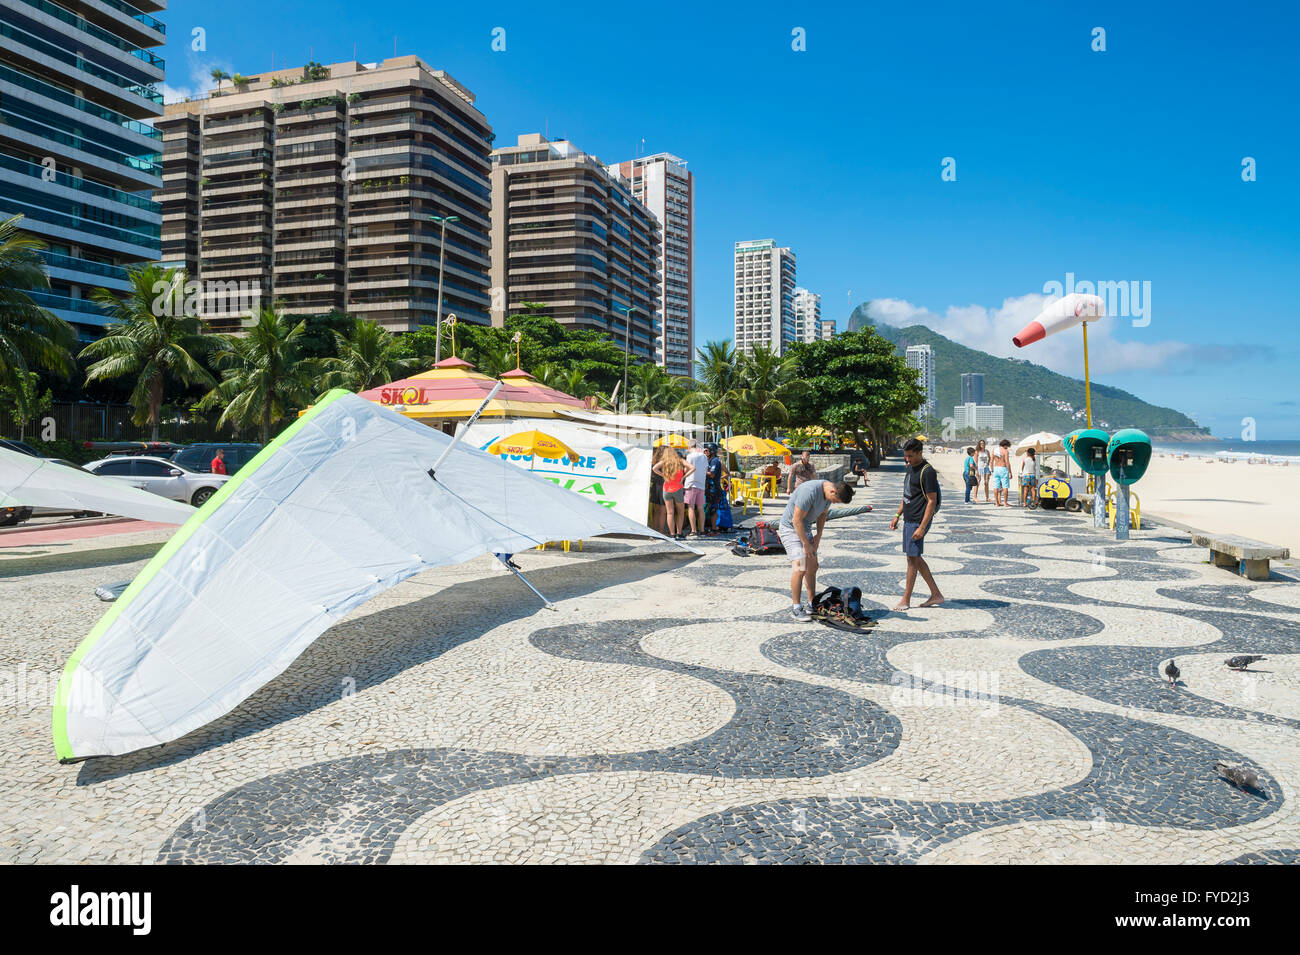 RIO DE JANEIRO - MARCH 19, 2016: Hanggliders wait for dismantling beside the beach at Sao Conrado. Stock Photo